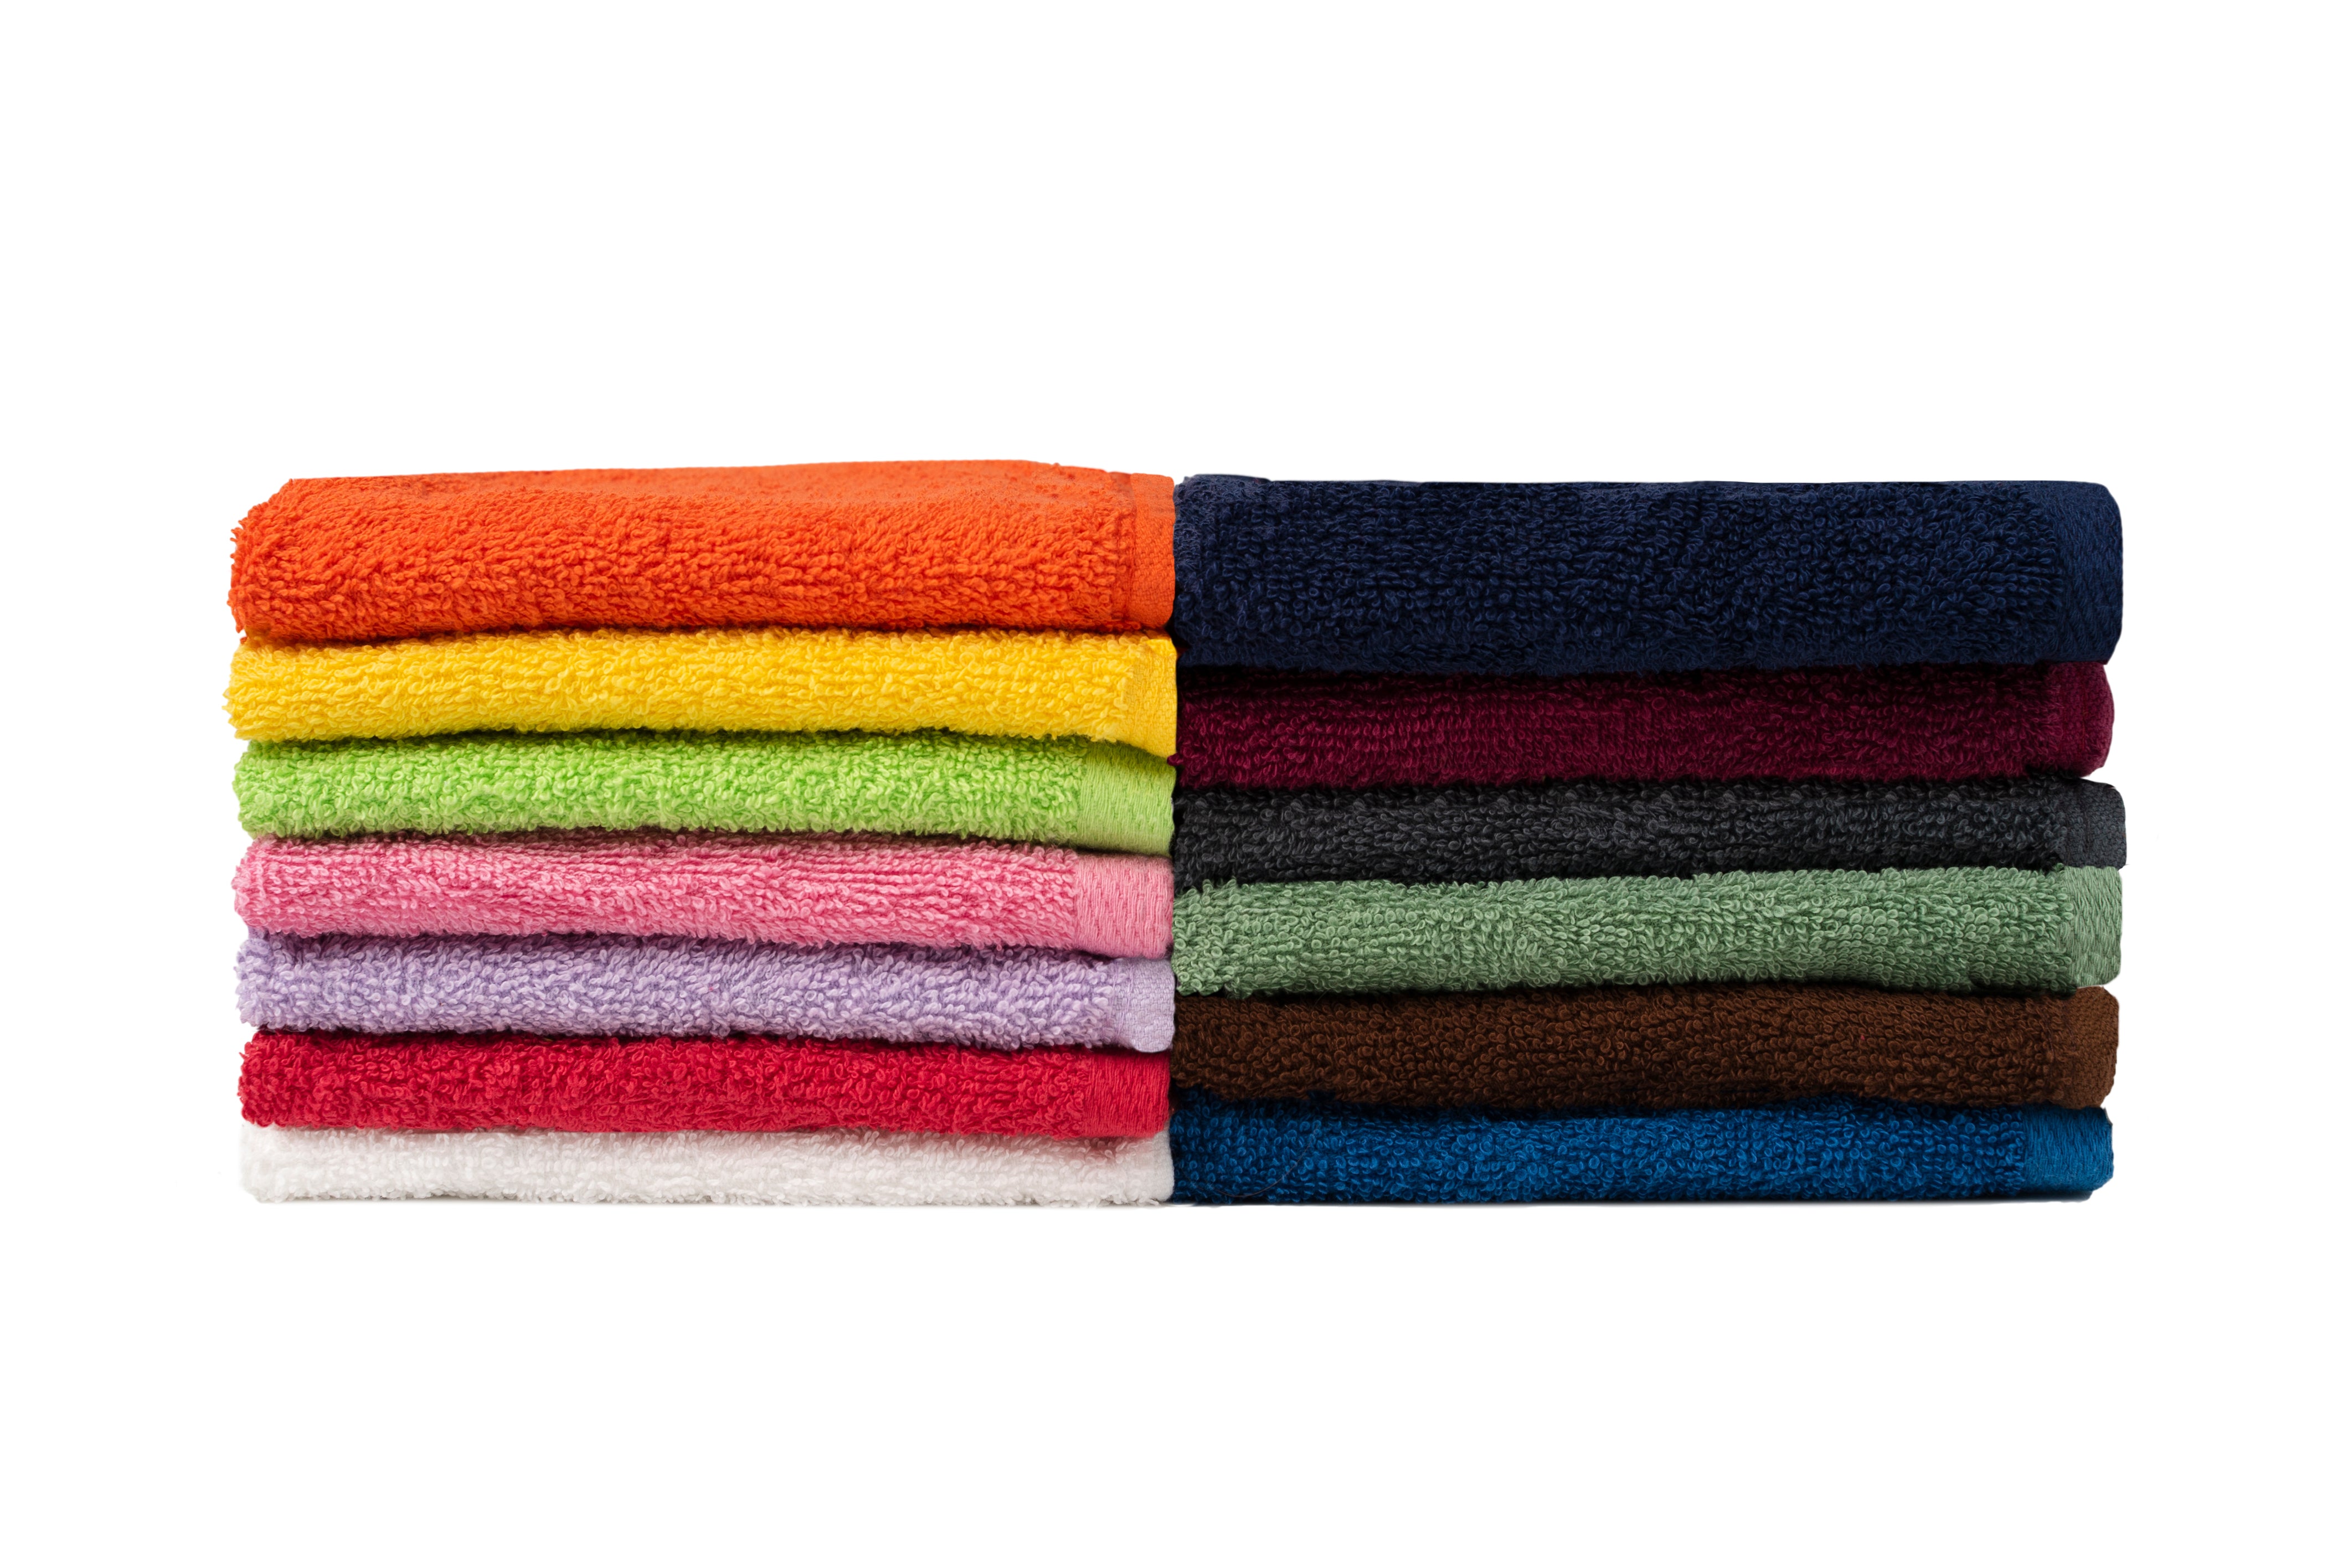 dlux3 – Towel Emporium